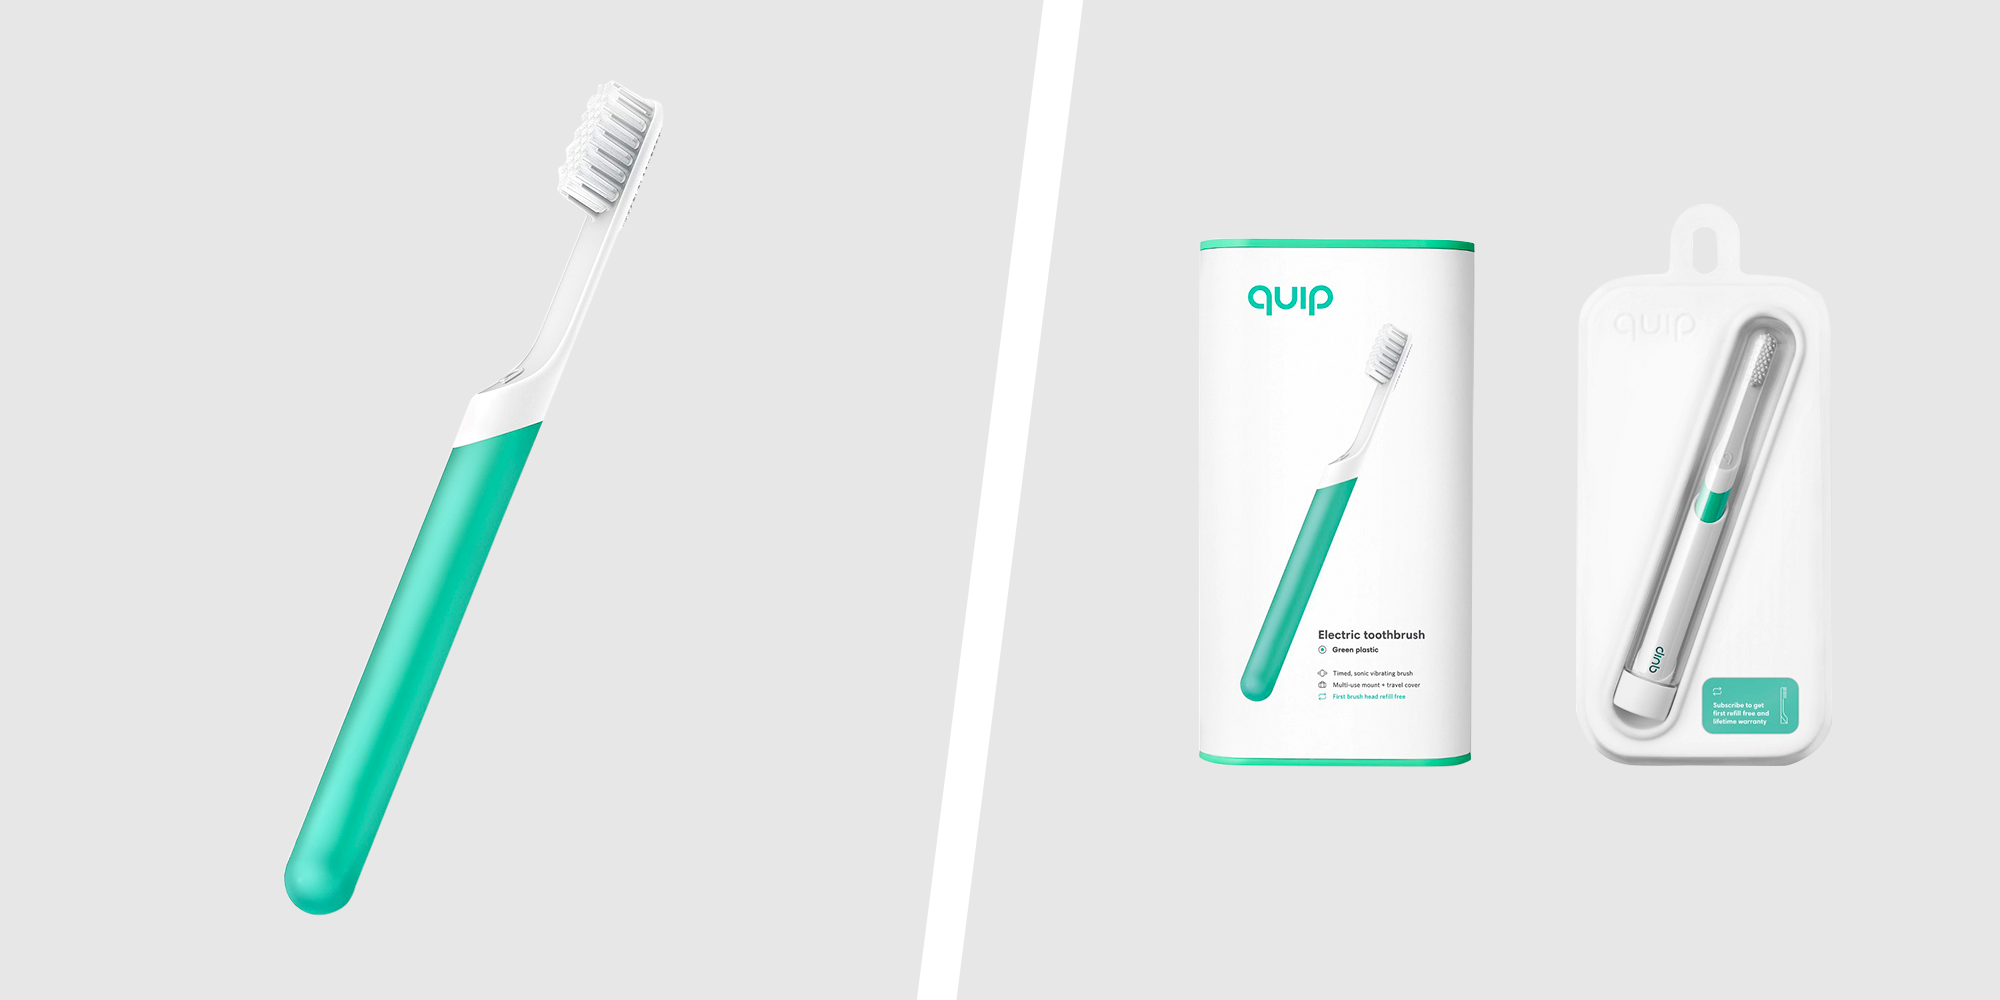 quip target toothbrush